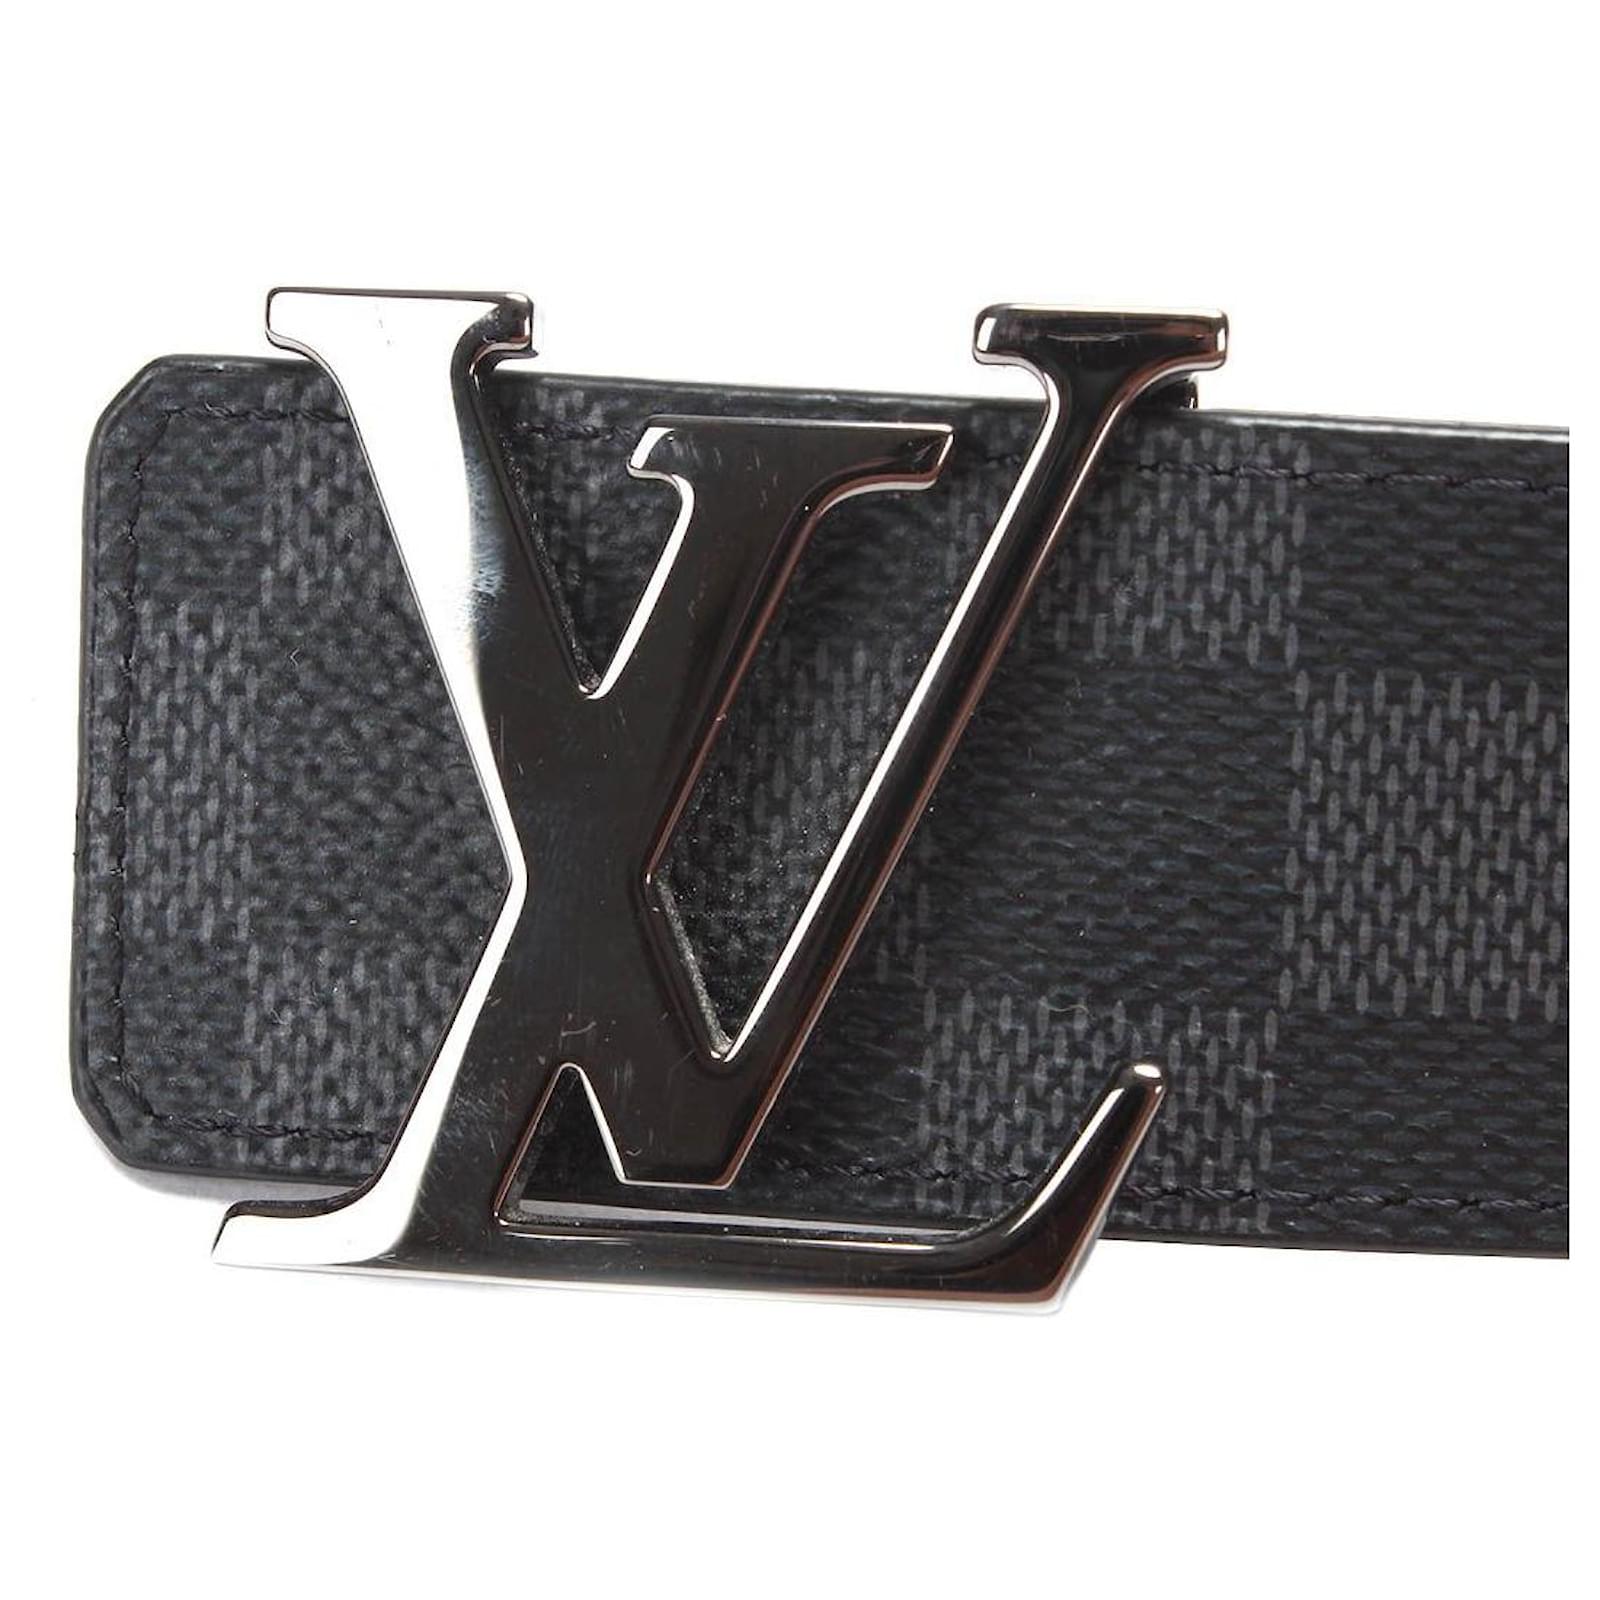 Louis Vuitton Damier Graphite Canvas LV Initiales Belt 95 CM Louis Vuitton  | The Luxury Closet